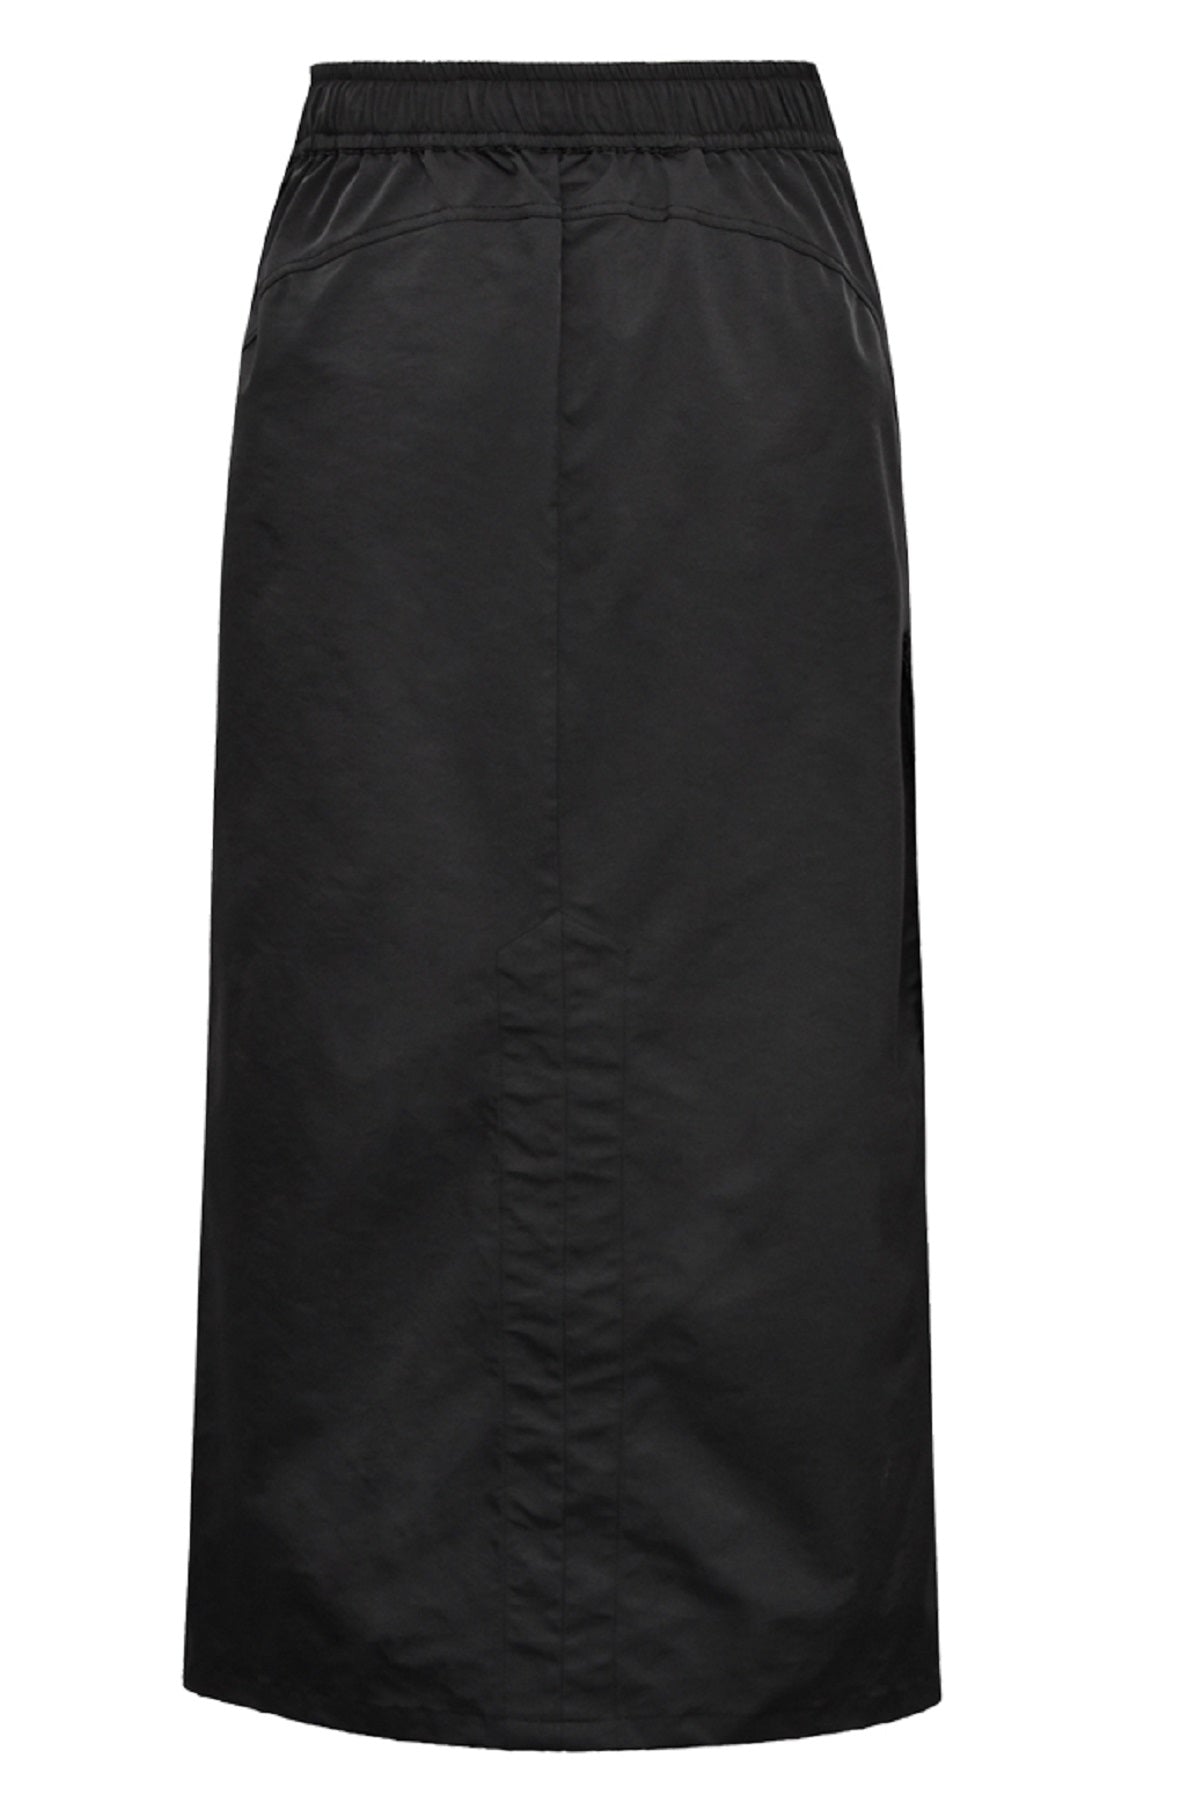 Gossia MayGO Skirt, Black